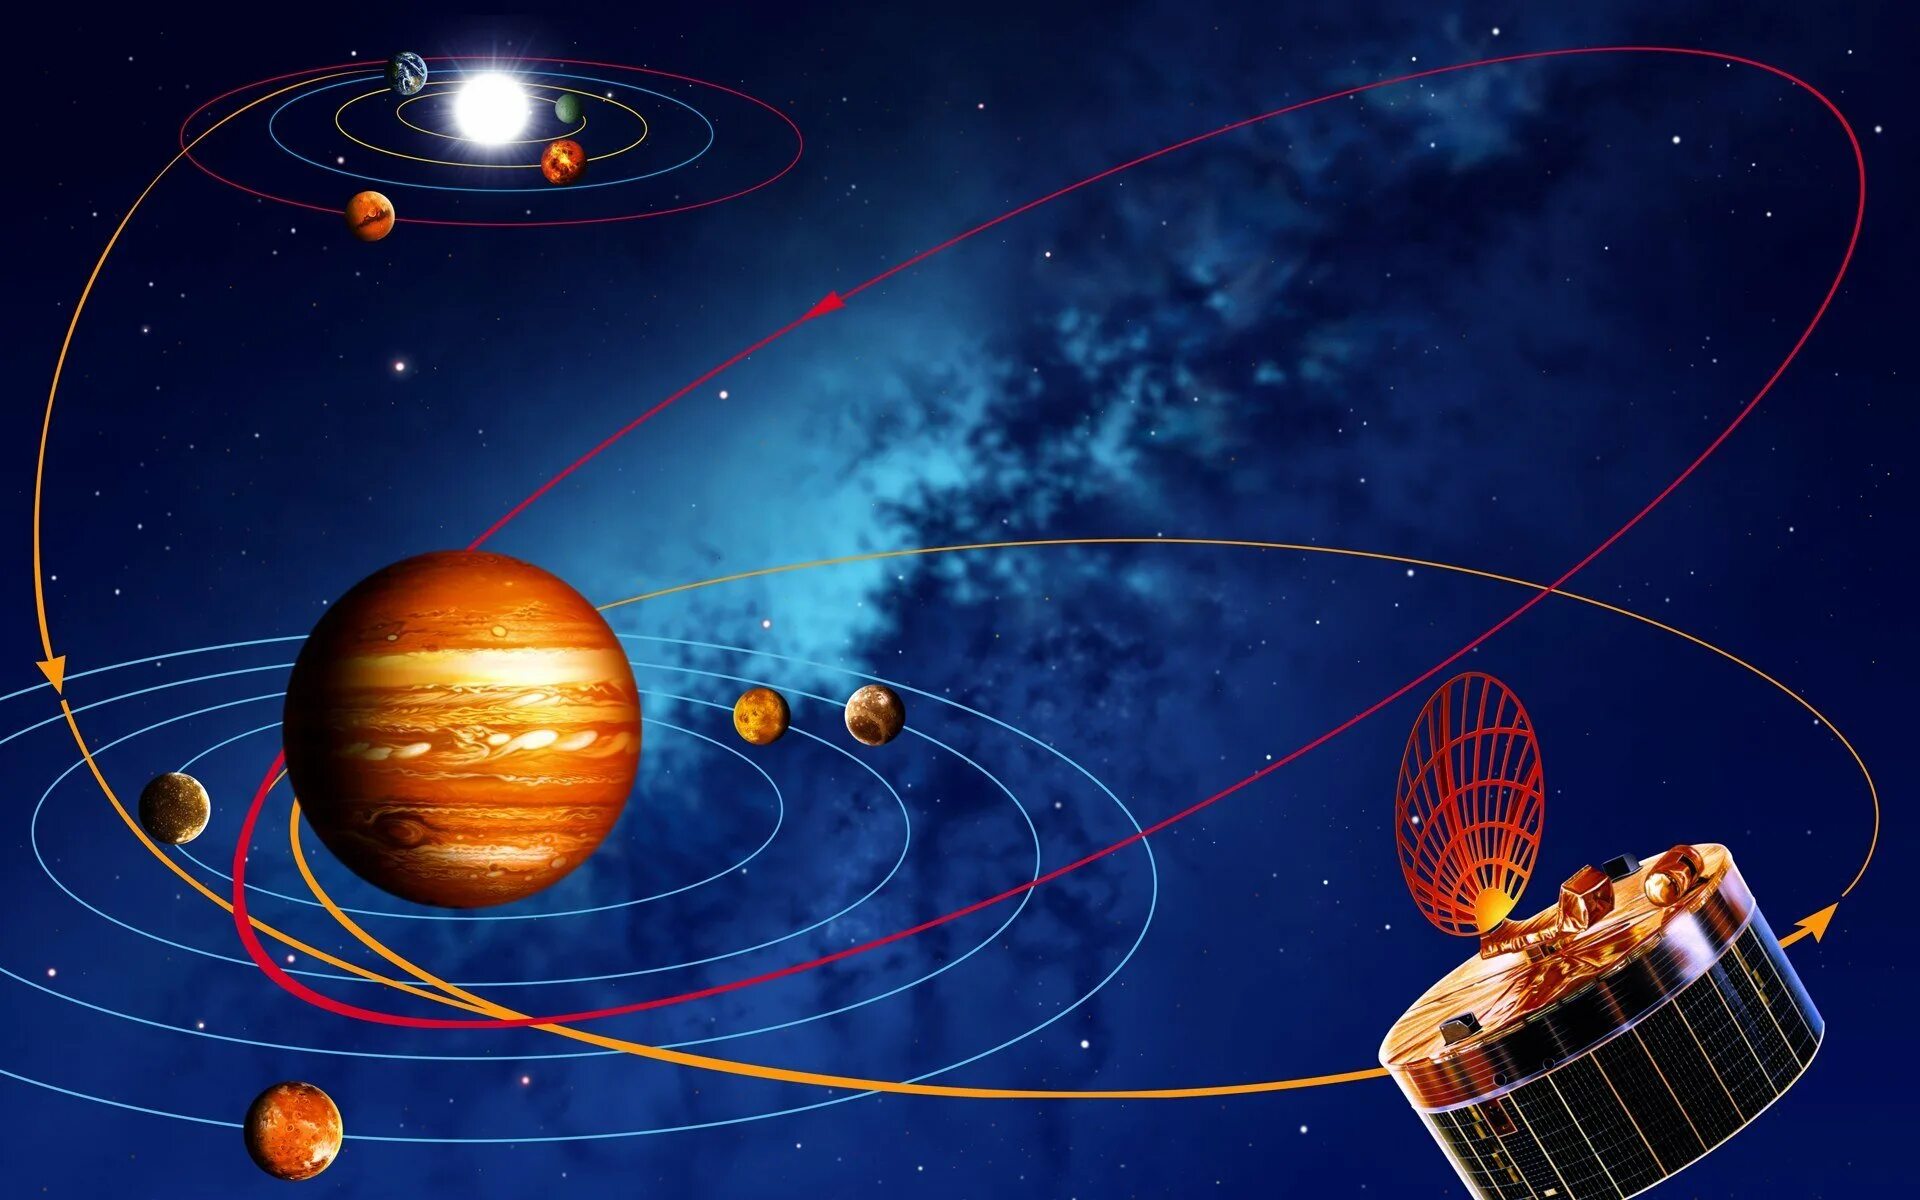 Space orbit. Космос планеты. Космос Солнечная система. Орбита планеты. Звёзды и планеты солнечной системы.